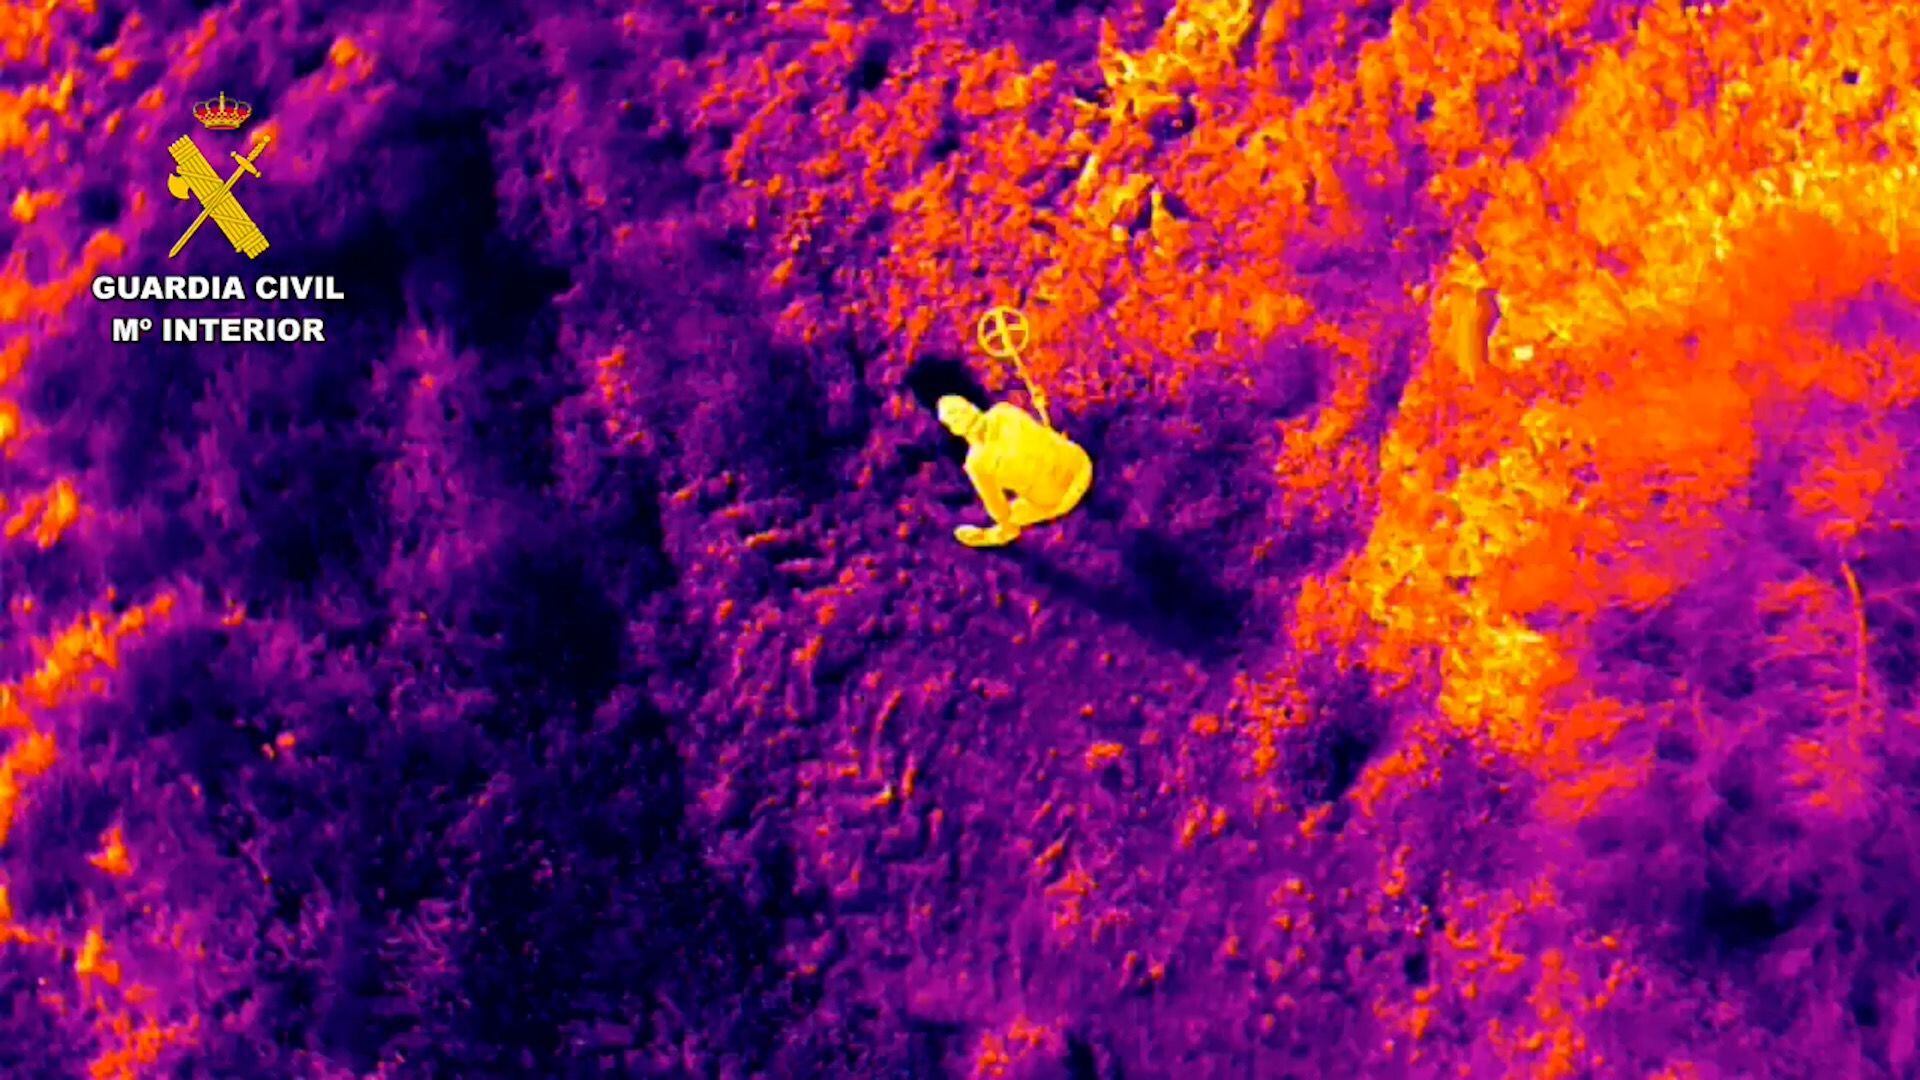 Vista aérea de una cámara térmica que capta a un hombre con un detector de metales.